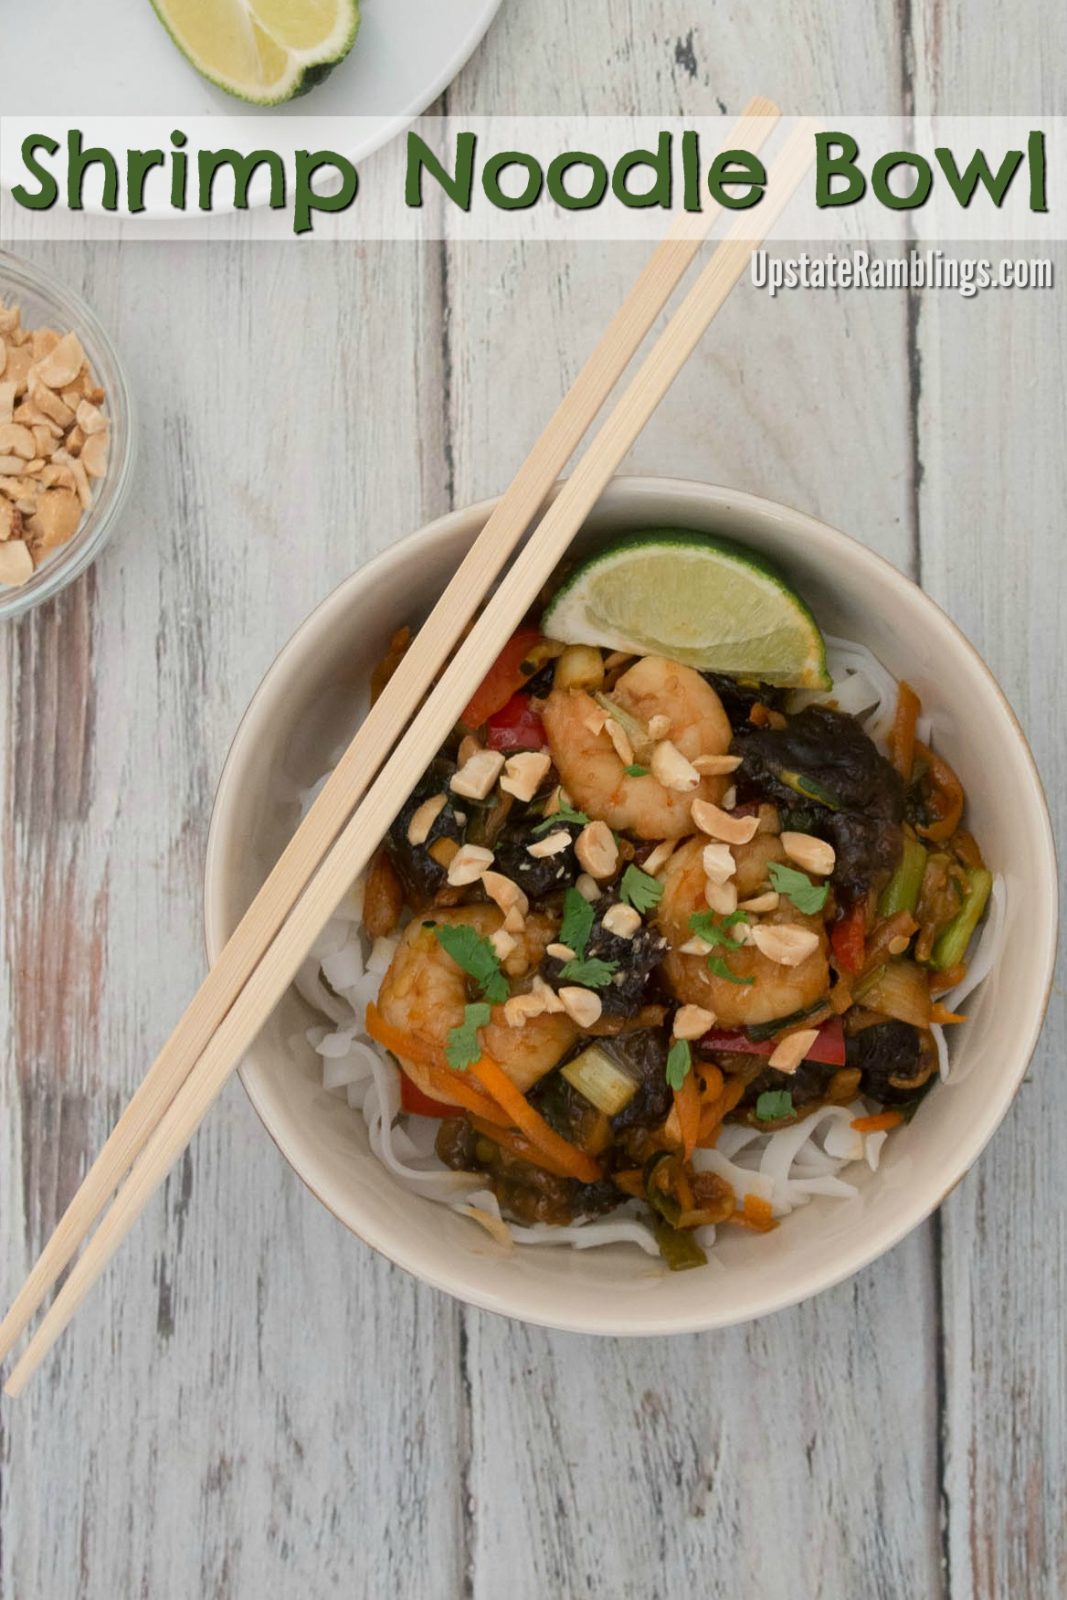 Shrimp noodle bowl with vegetables and chopsticks.